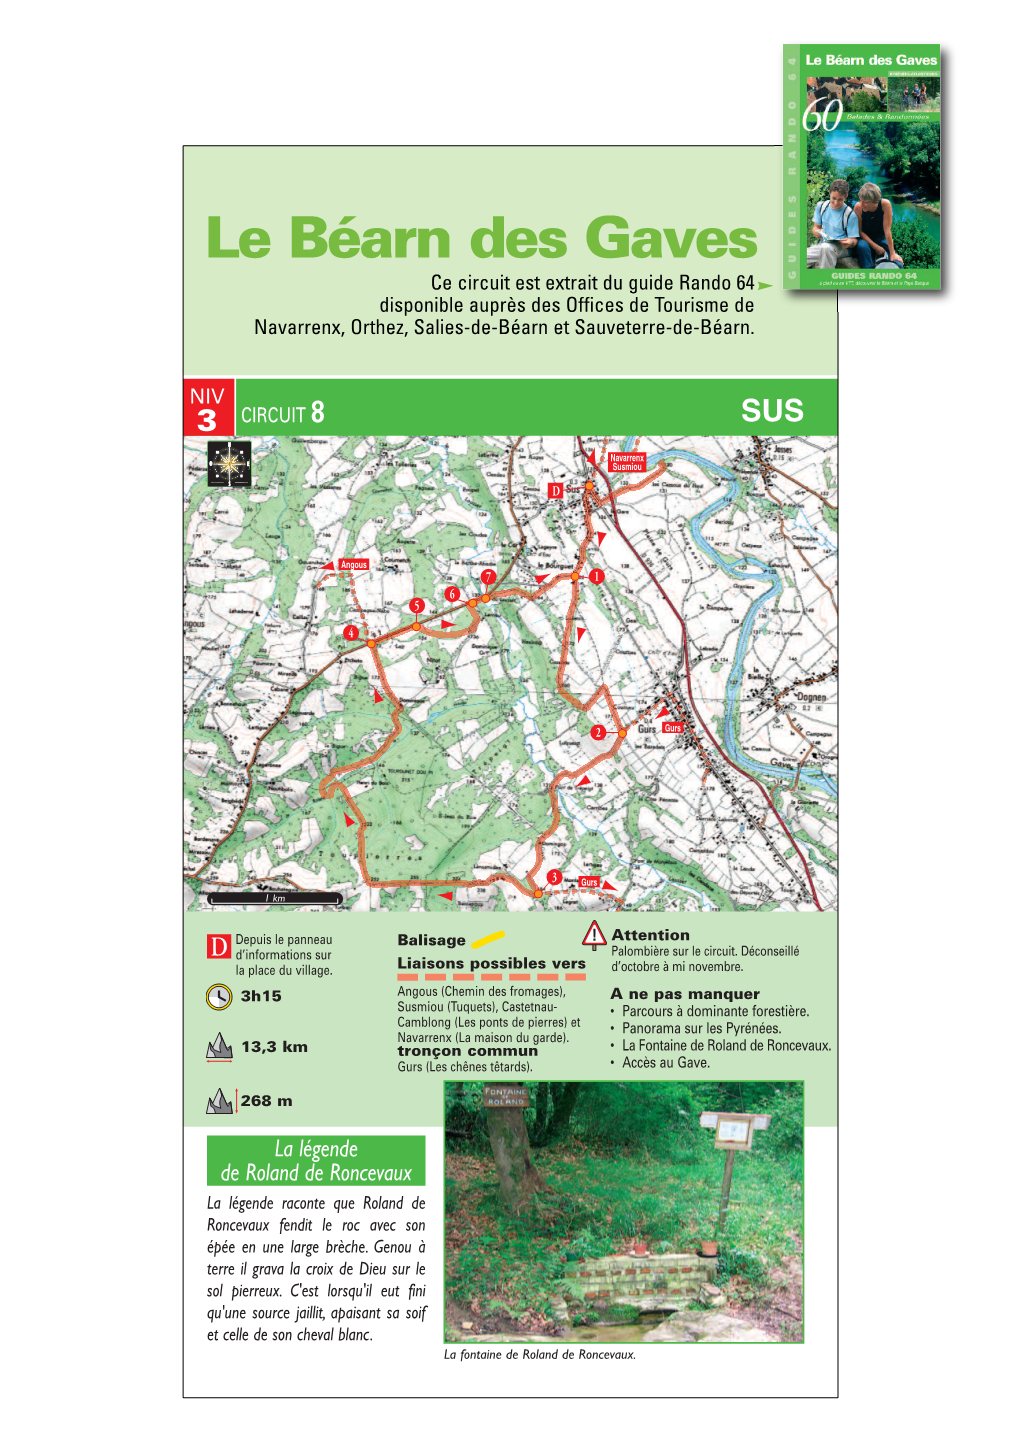 Le Béarn Des Gaves Ce Circuit Est Extrait Du Guide Rando 64 Disponible Auprès Des Offices De Tourisme De Navarrenx, Orthez, Salies-De-Béarn Et Sauveterre-De-Béarn